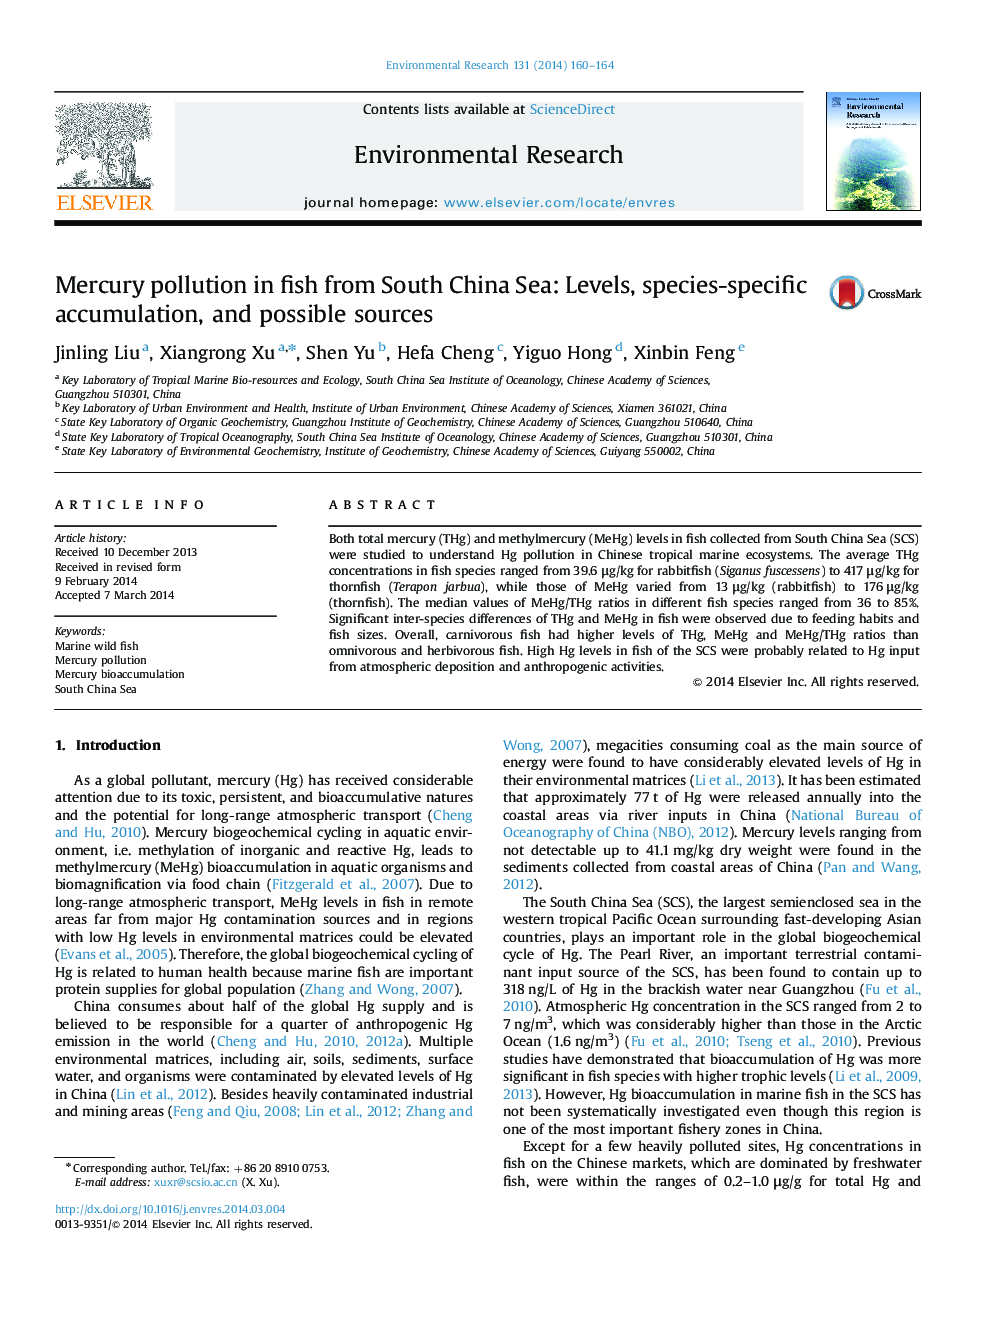 آلودگی جیوه در ماهی های دریای جنوب چین: سطوح، انباشت خاص گونه ها و منابع احتمالی 